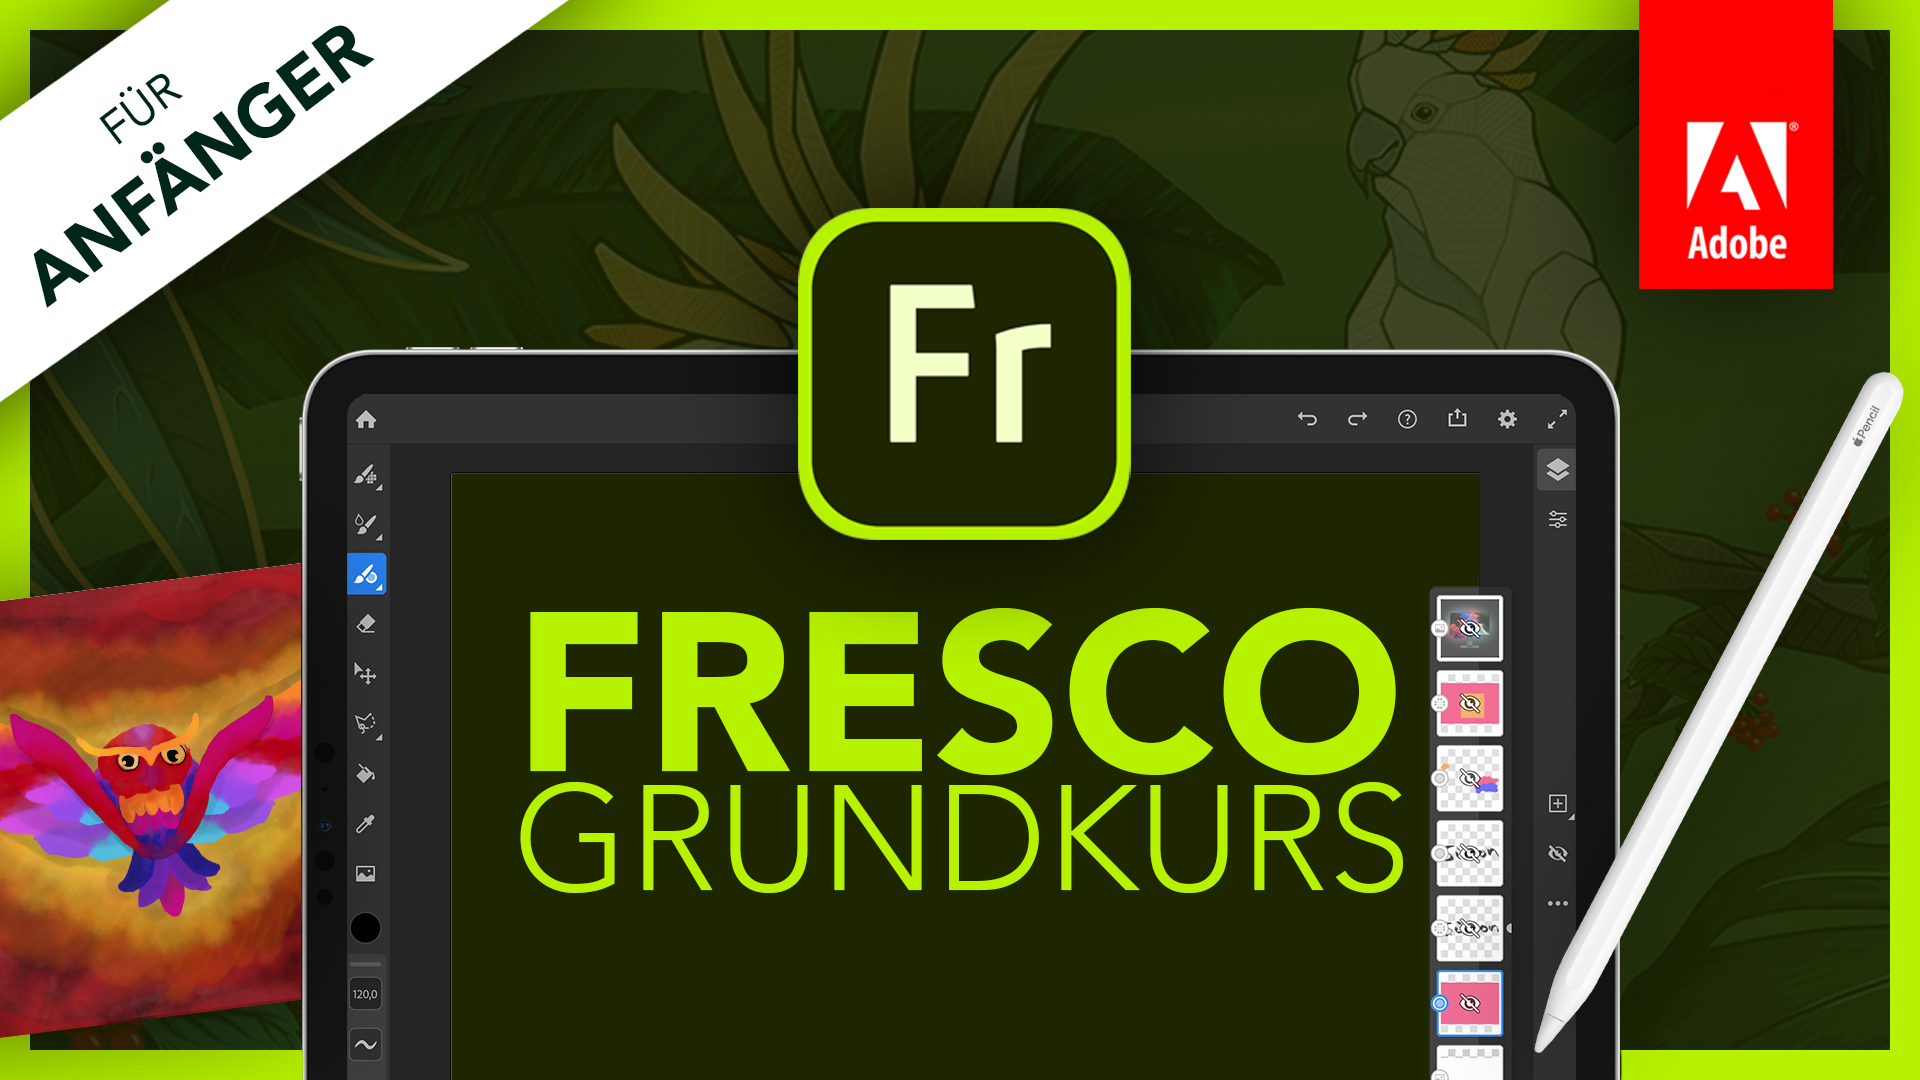 Adobe Fresco 2020 (Grundkurs für Anfänger) Deutsch